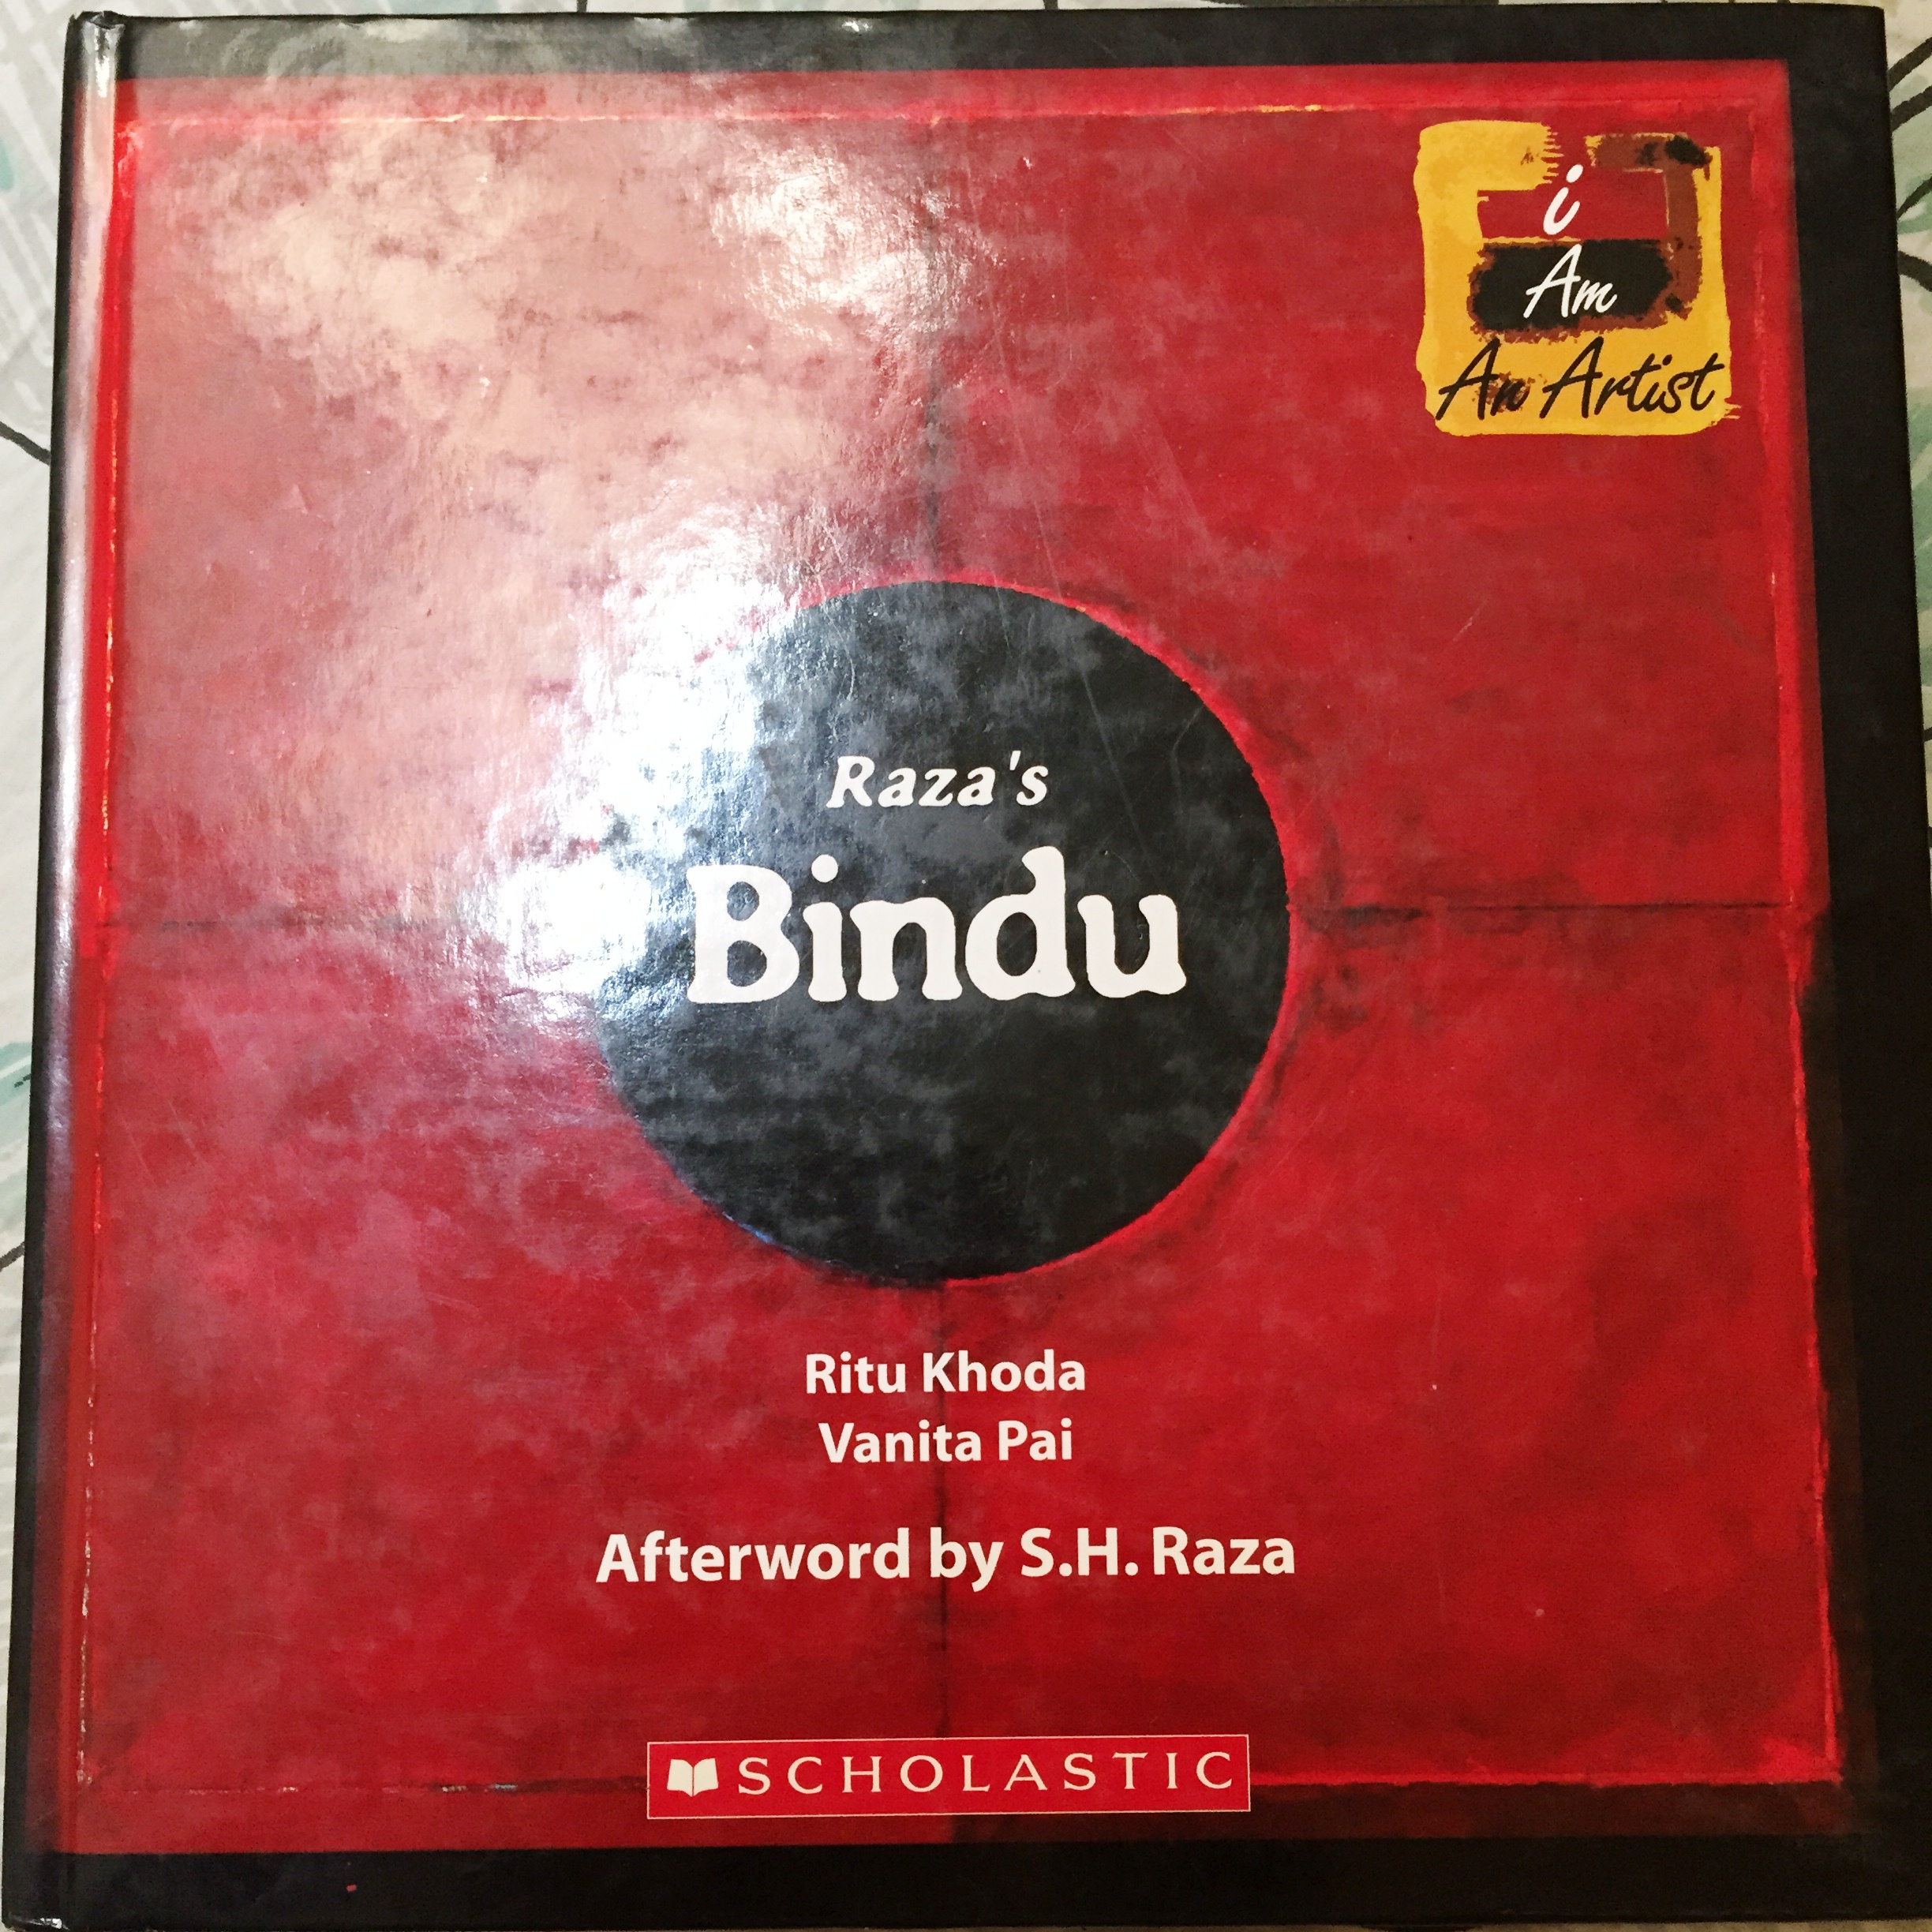 Raza's Bindu